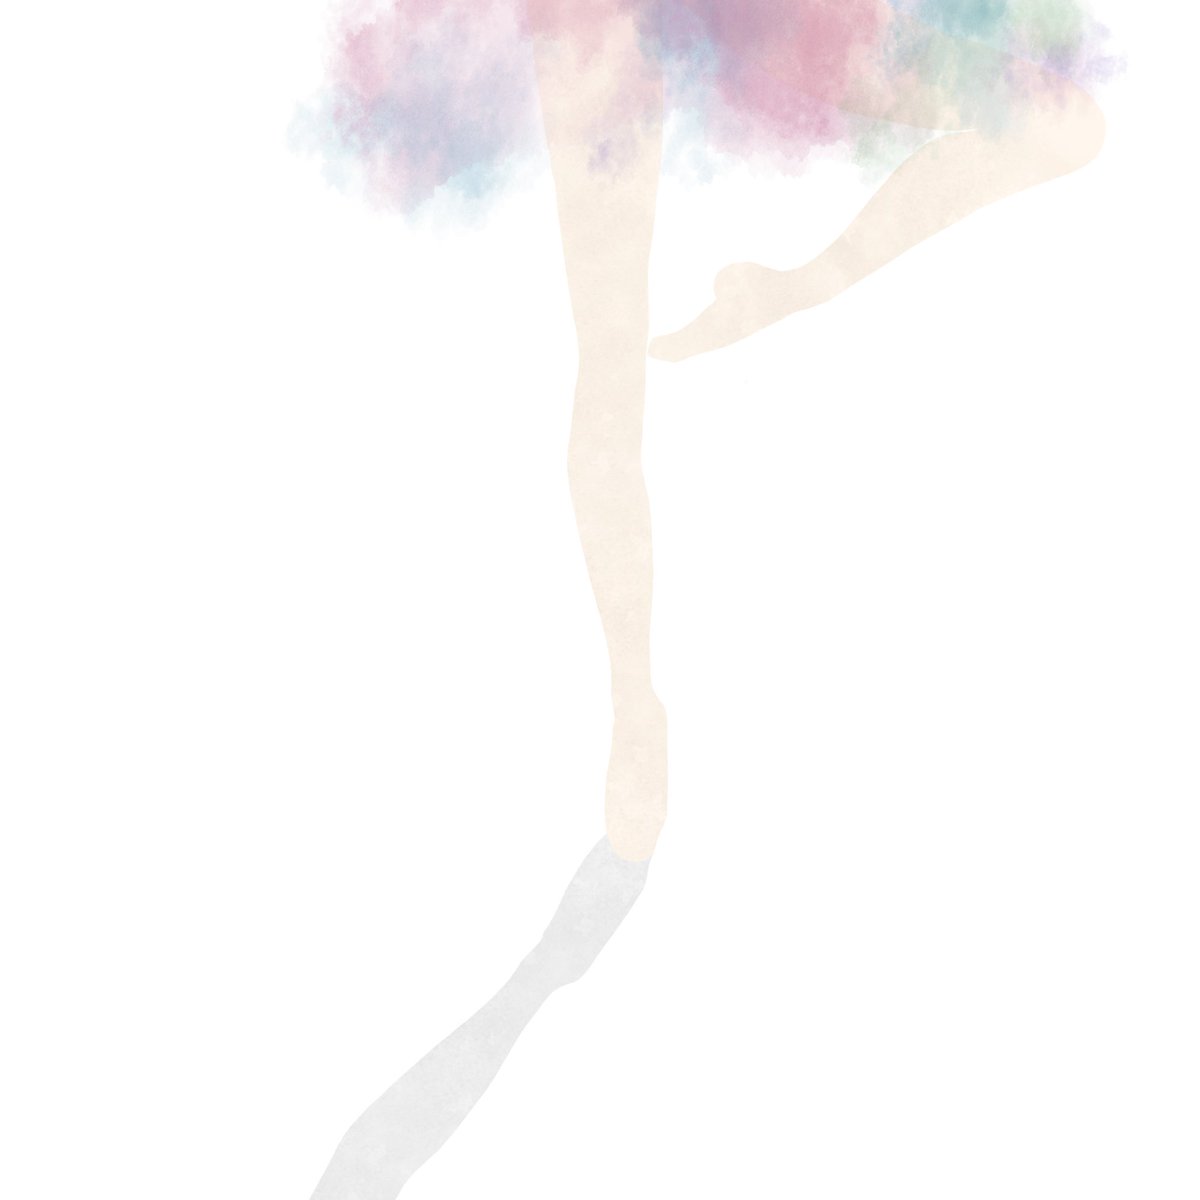 夏 Twitterissa 踊り子 踊り子 バレエ チュチュ イラスト イラスト好きな人と繋がりたい Illustration Illust Ballet Dance